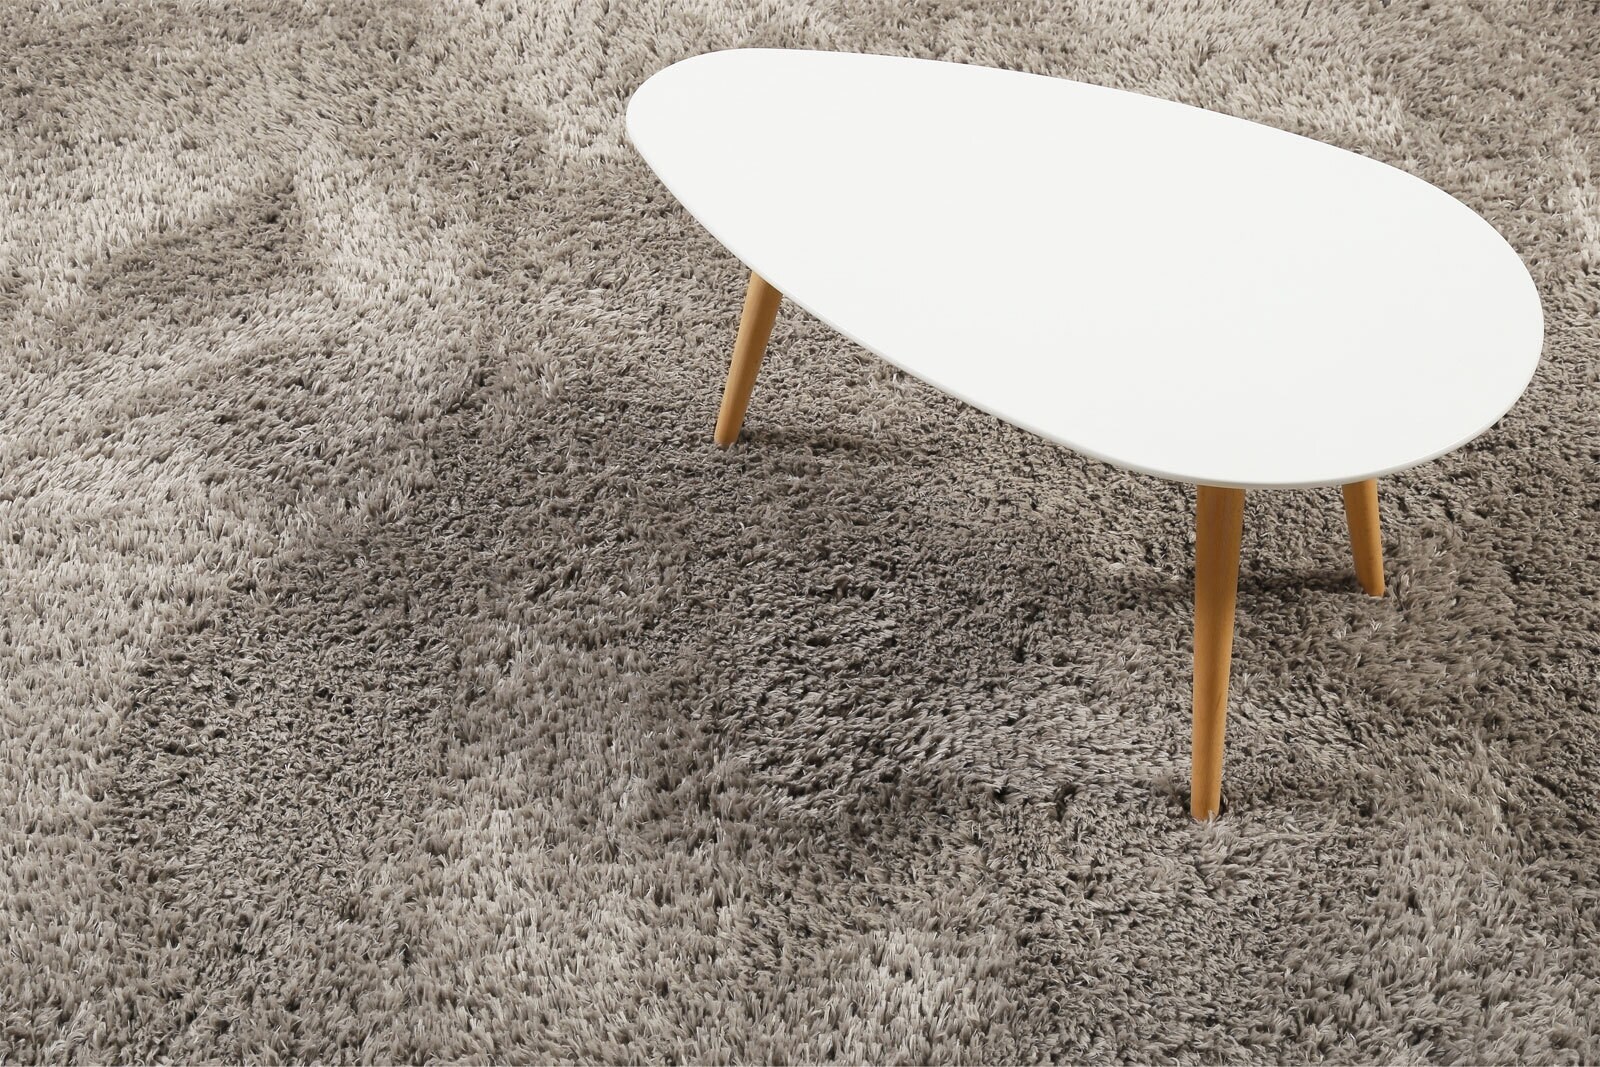 ESPRIT Hochflorteppich YOGI 133 x 200 cm sand/beige